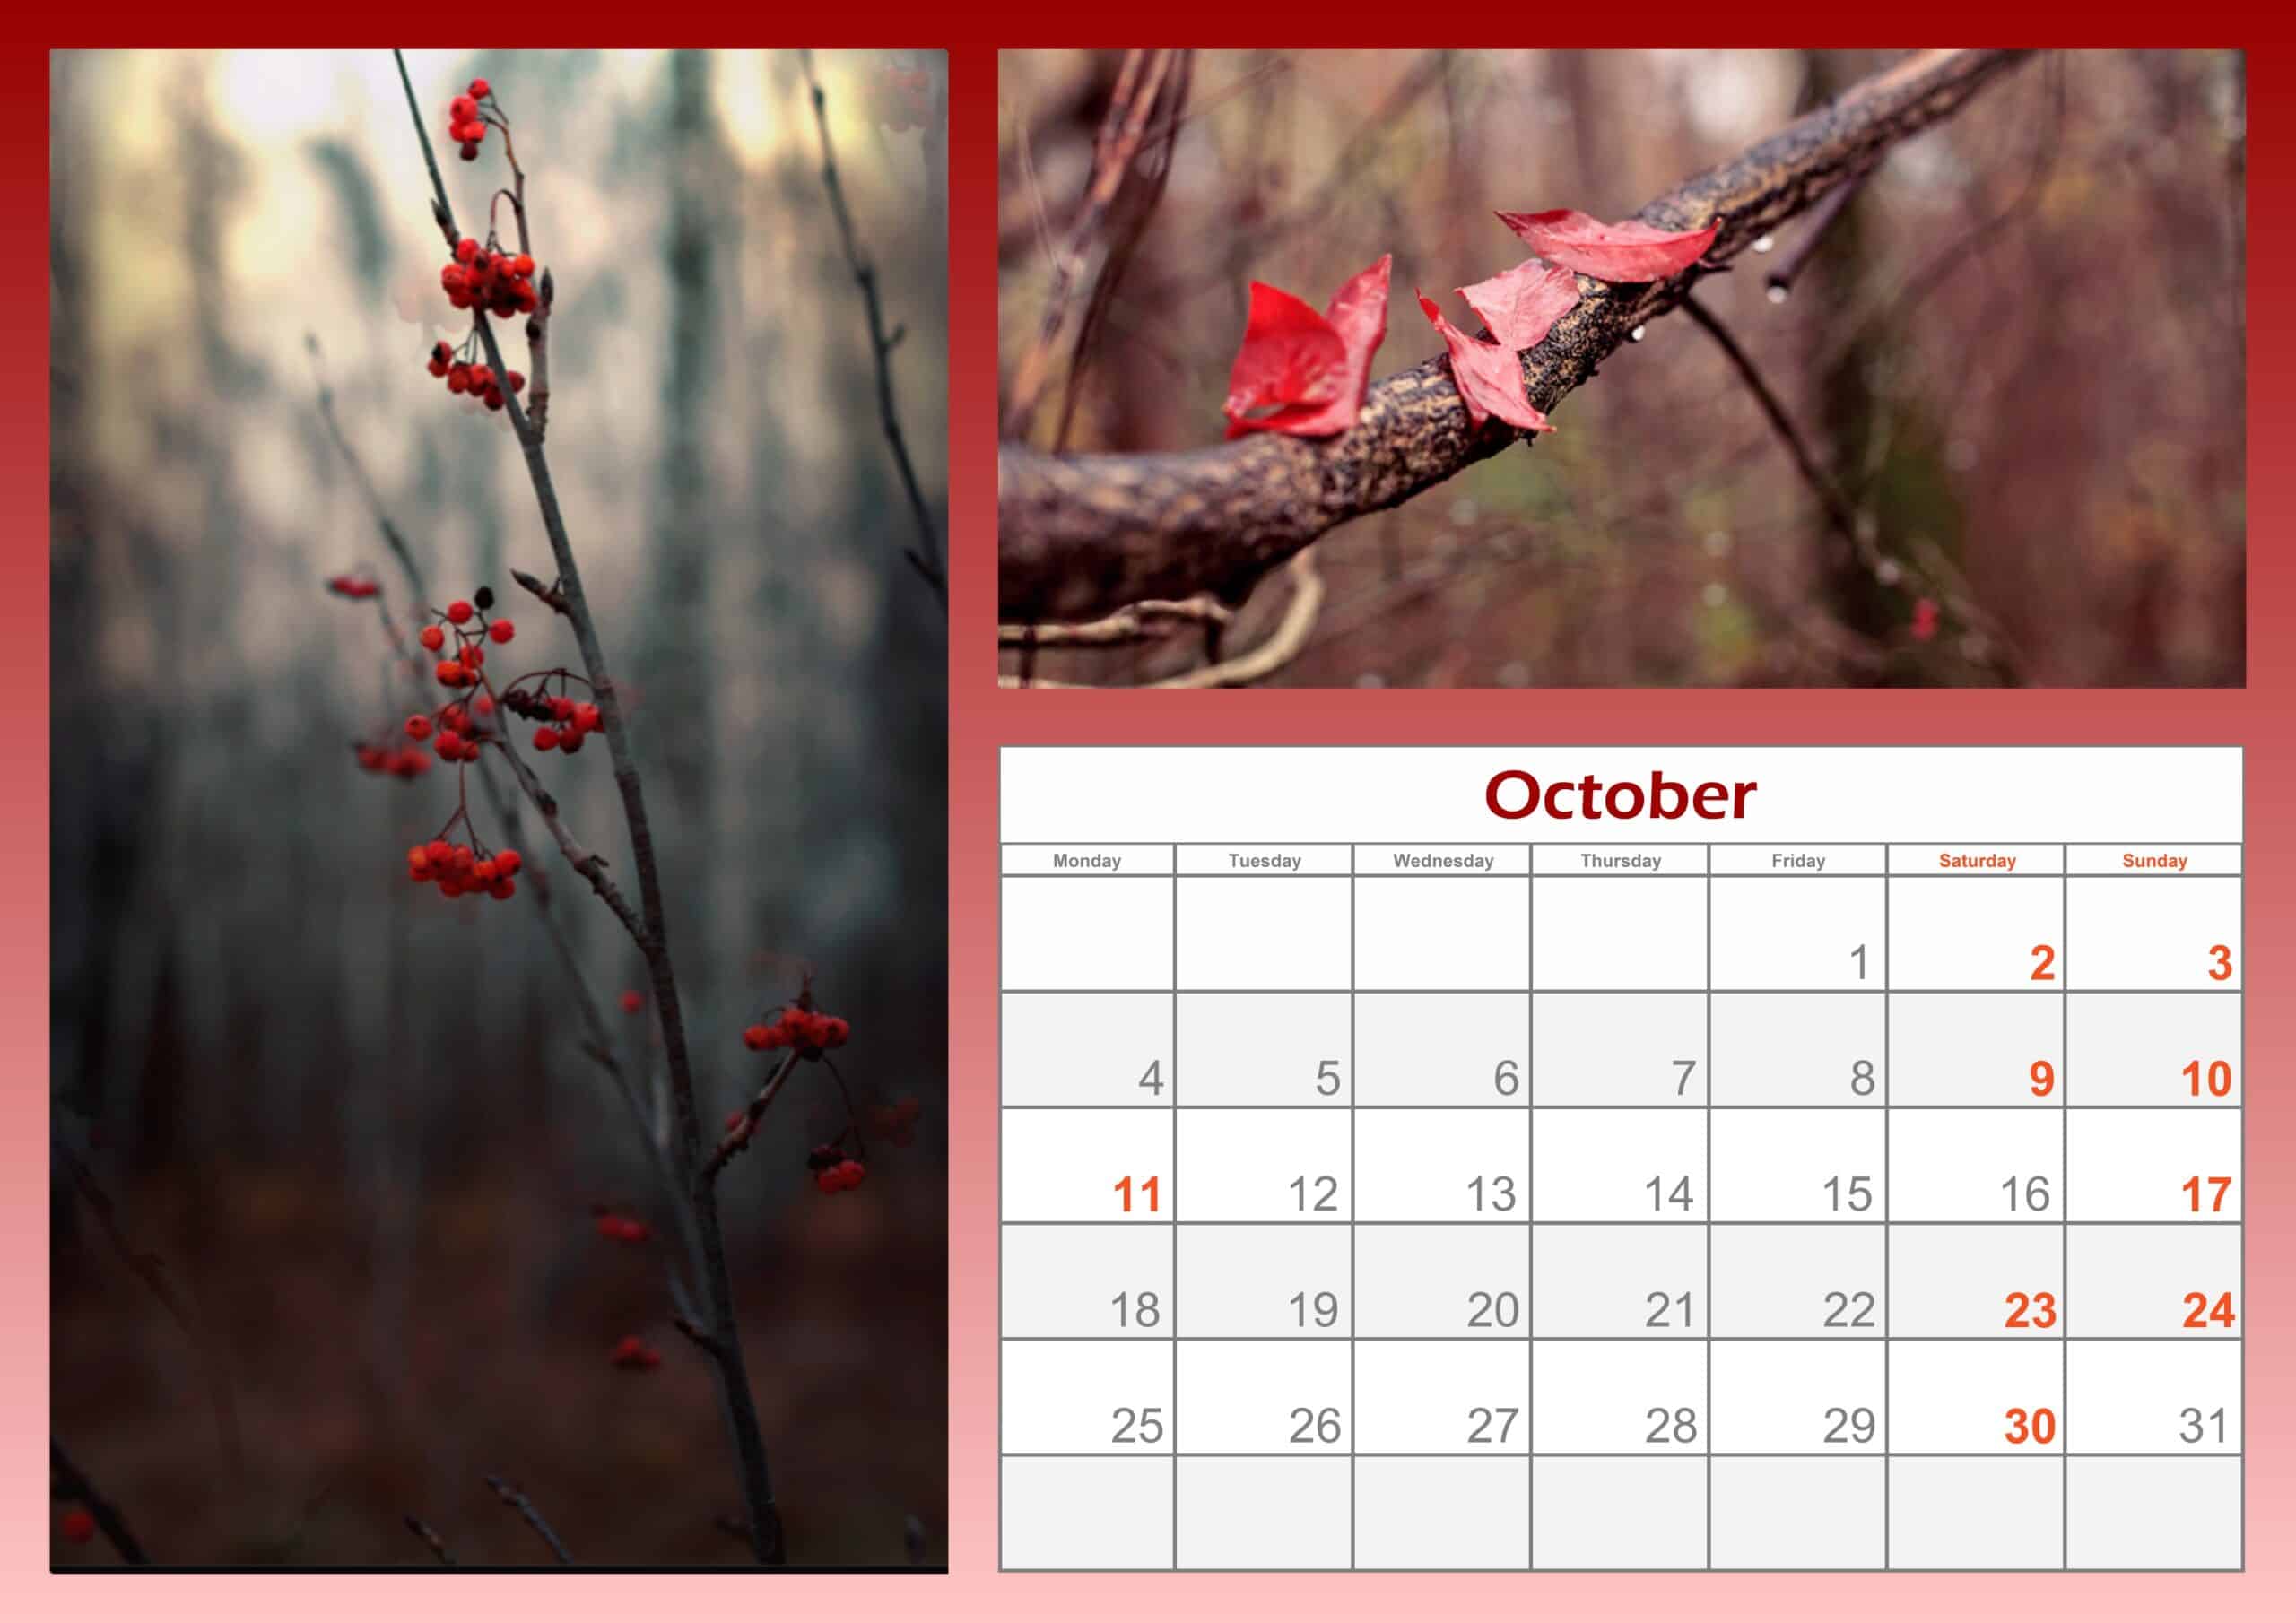 2021 October Calendar Printable